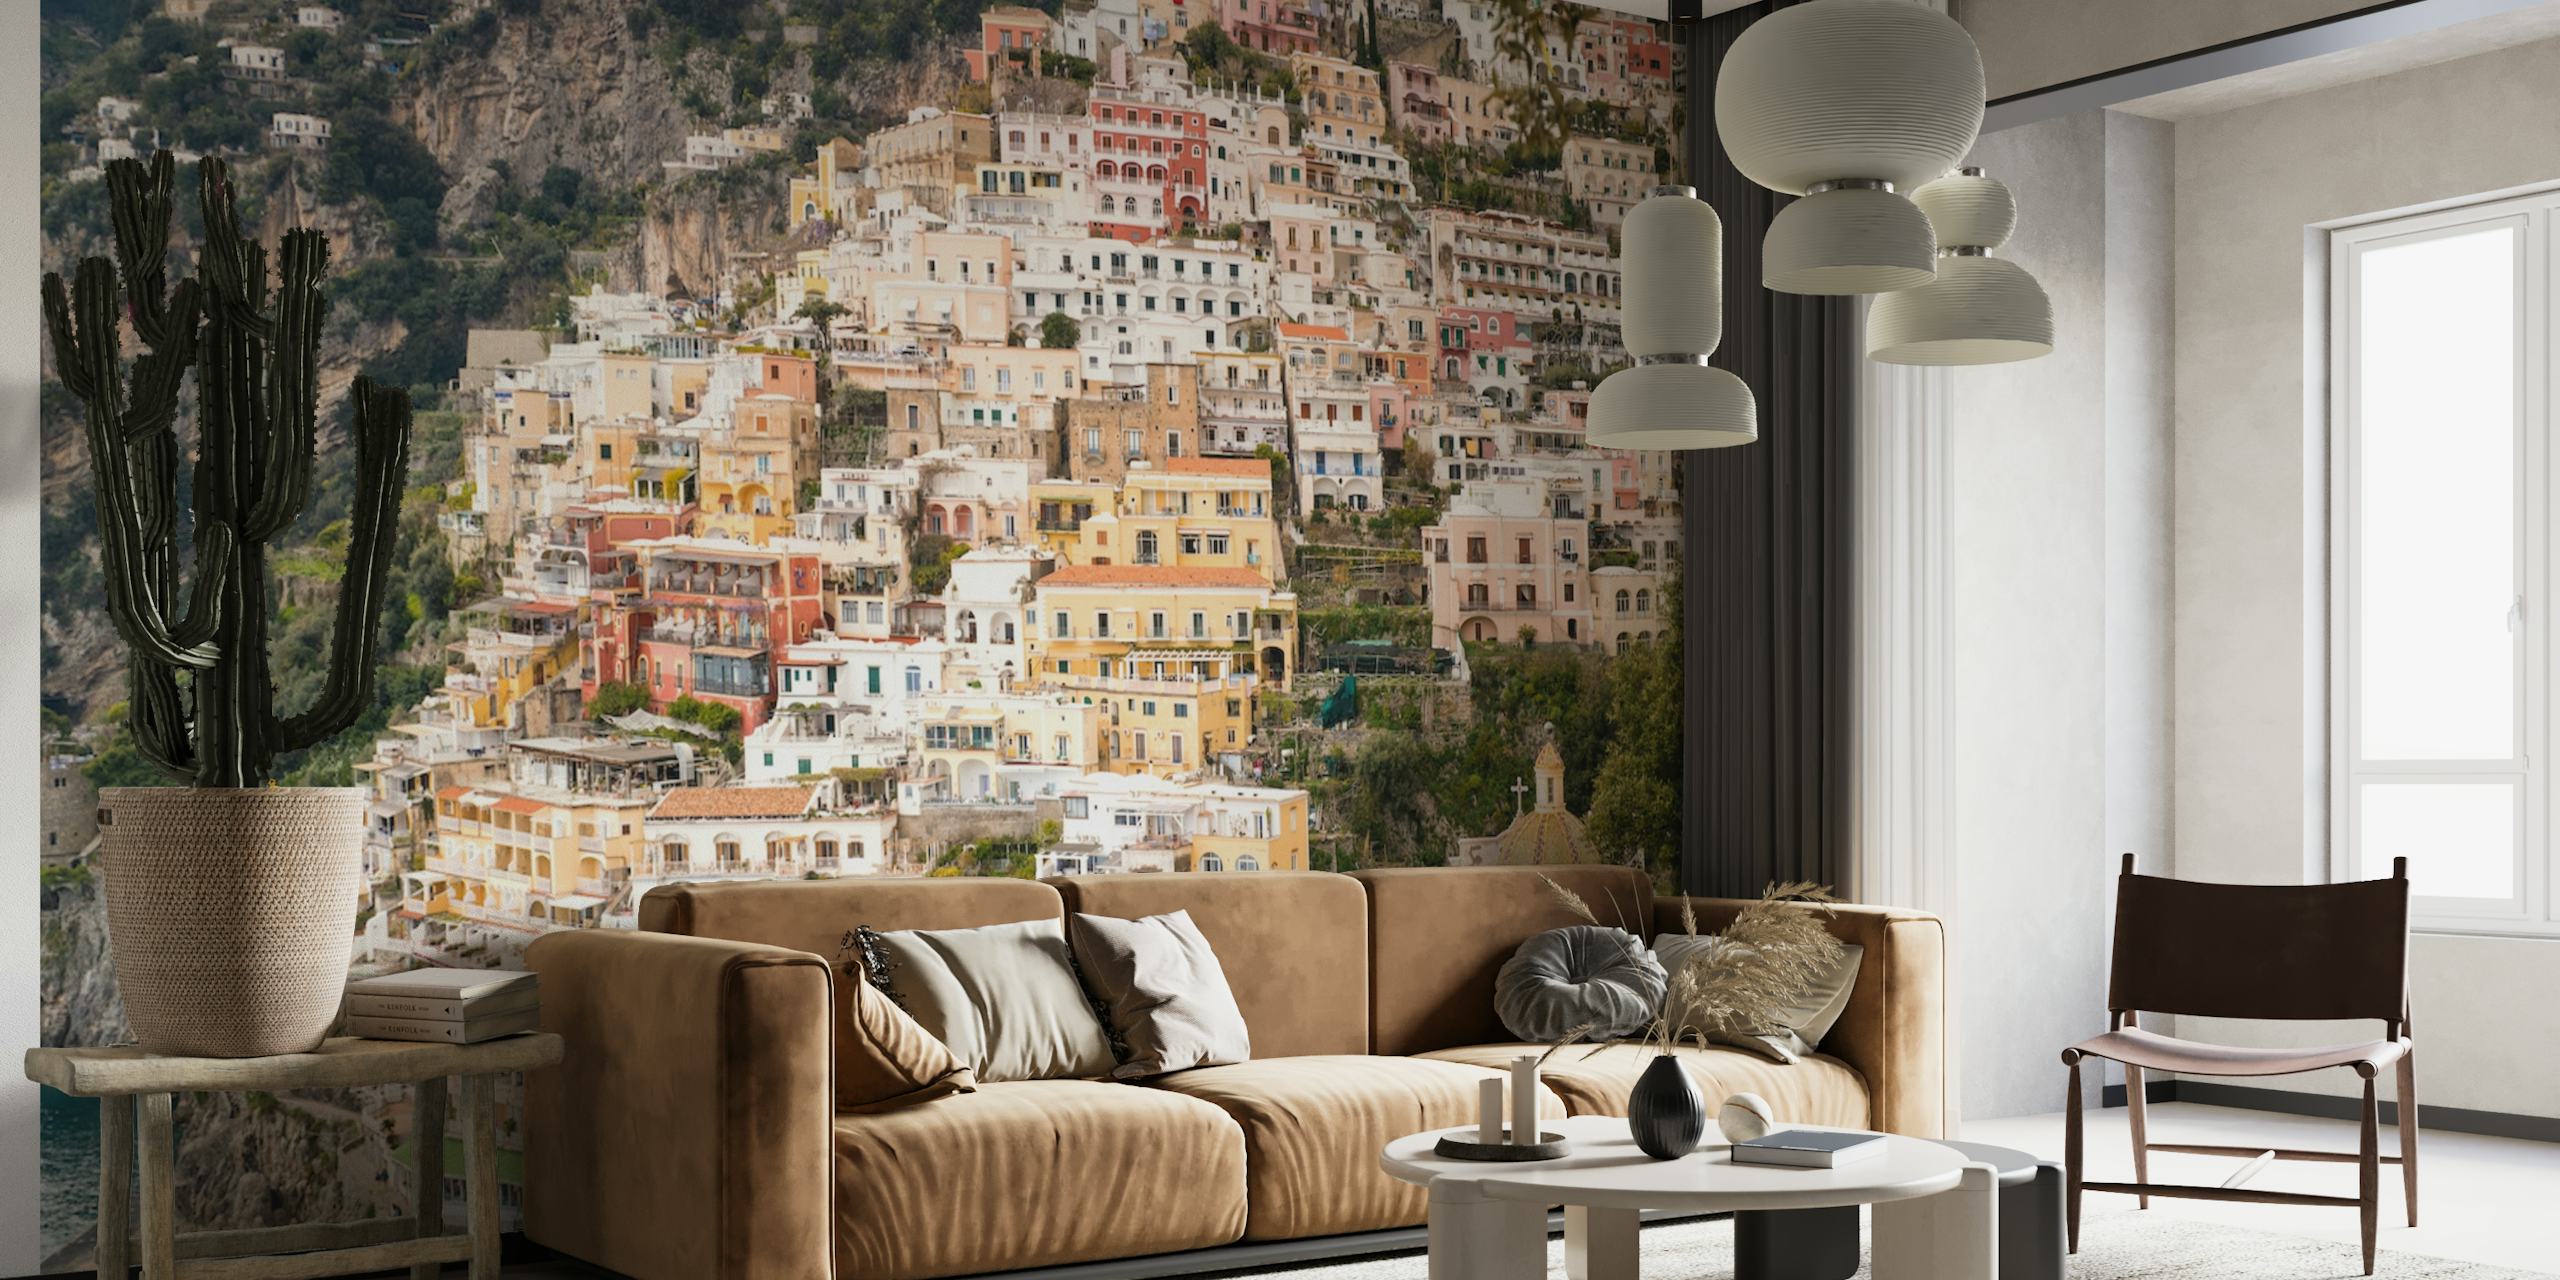 Photo murale de Positano sur la côte amalfitaine avec des bâtiments colorés et une ambiance méditerranéenne